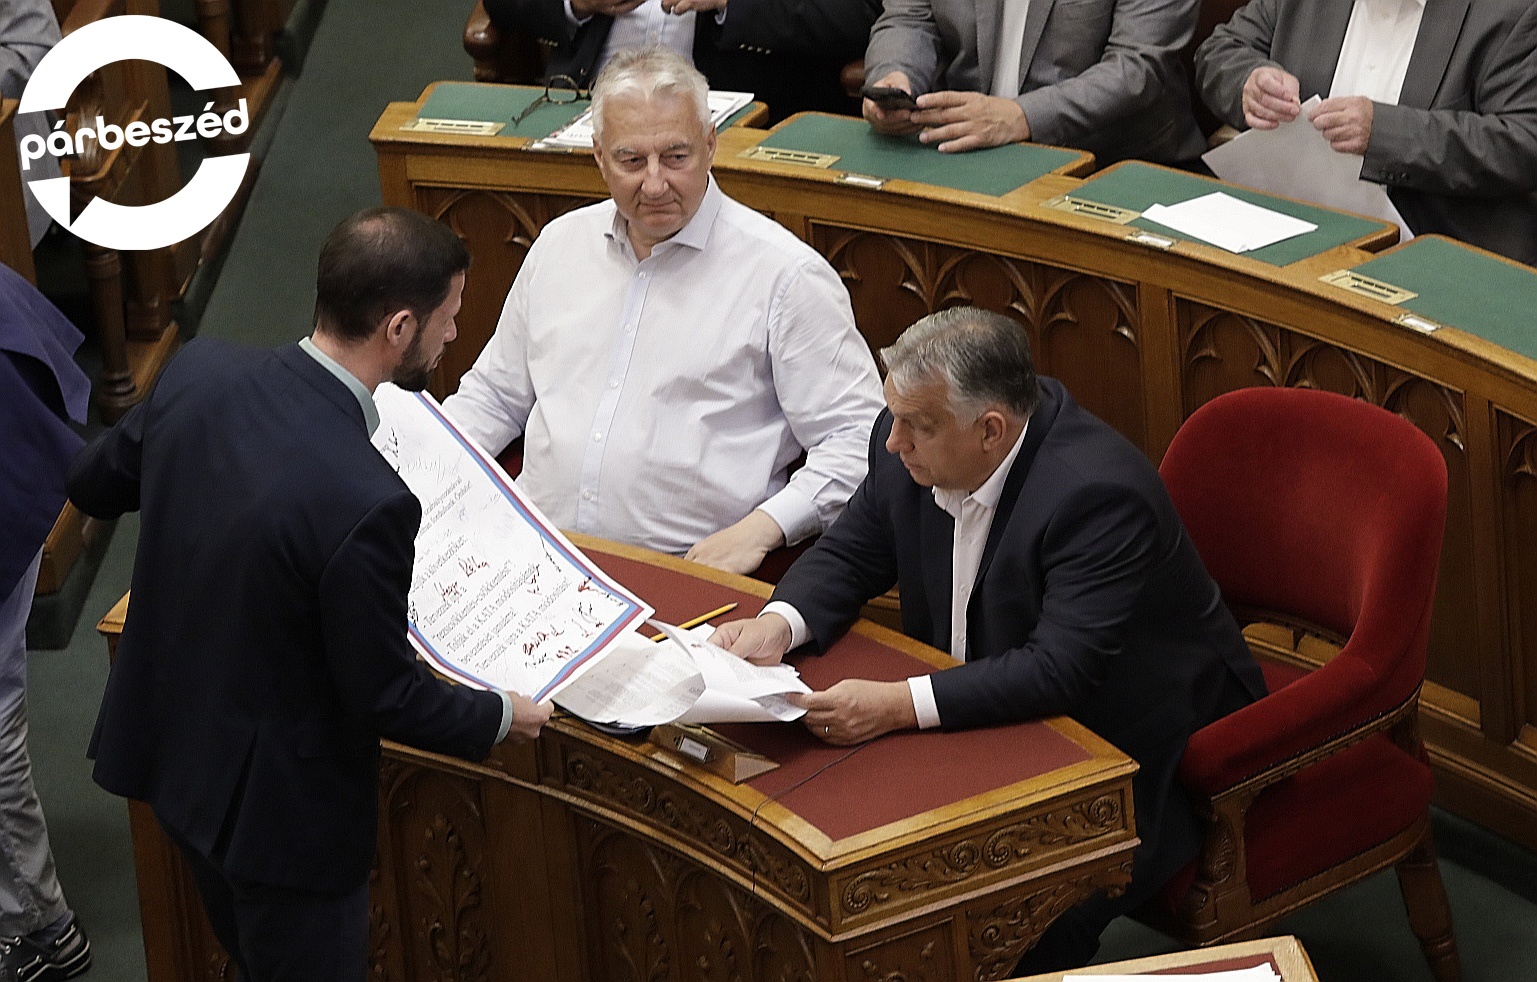 Orbán Viktor nem vette át a tüntetők petícióját a parlamentben